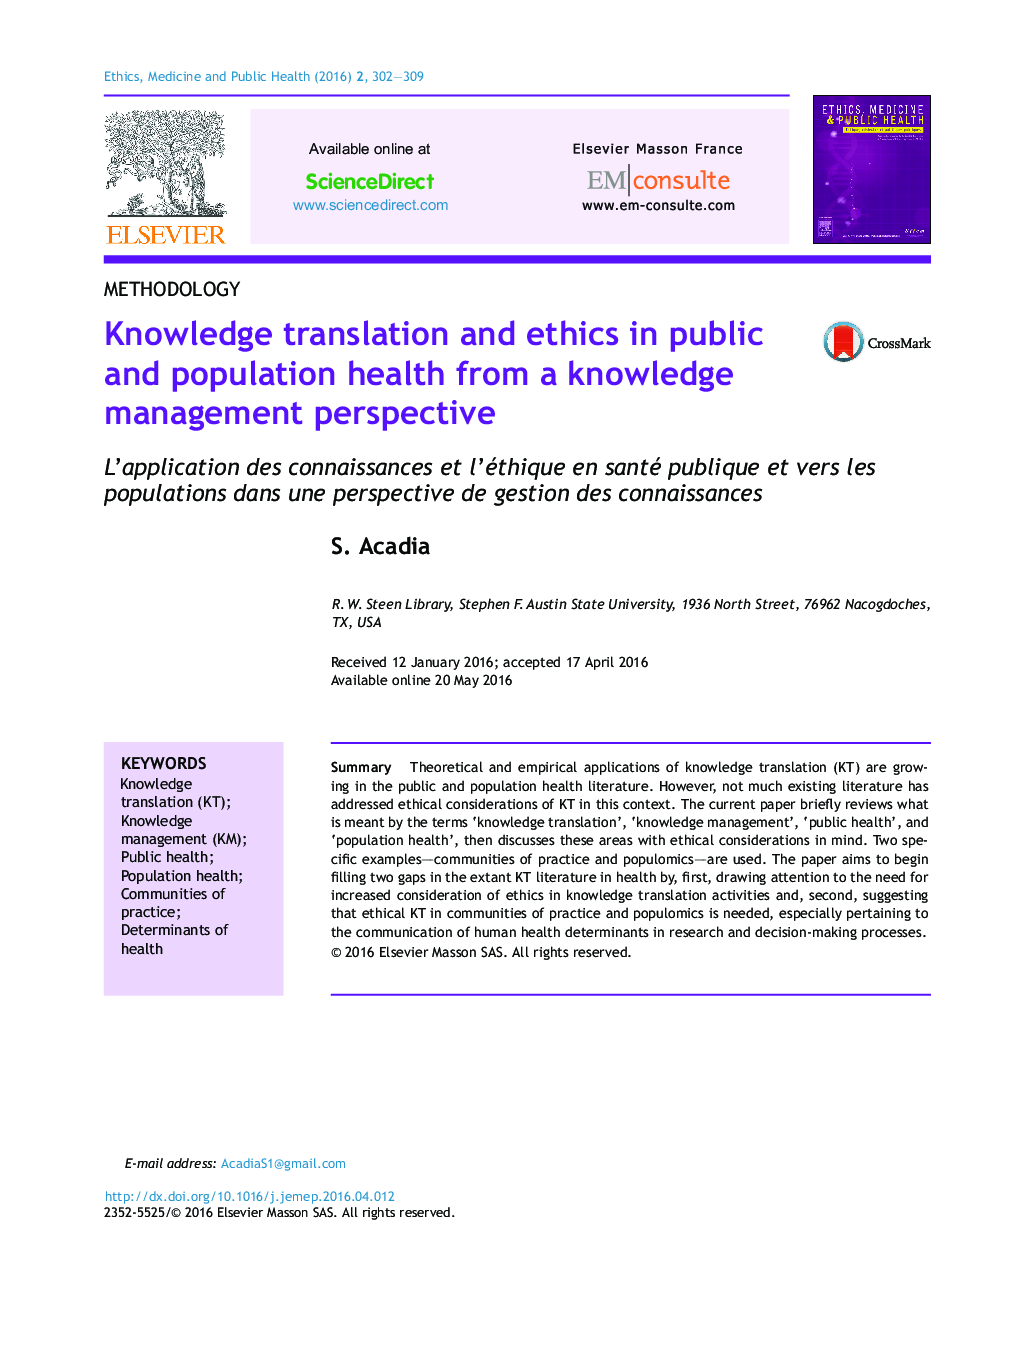 ترجمه دانش و اخلاق در بهداشت عمومی و جمعیت از دیدگاه مدیریت دانش